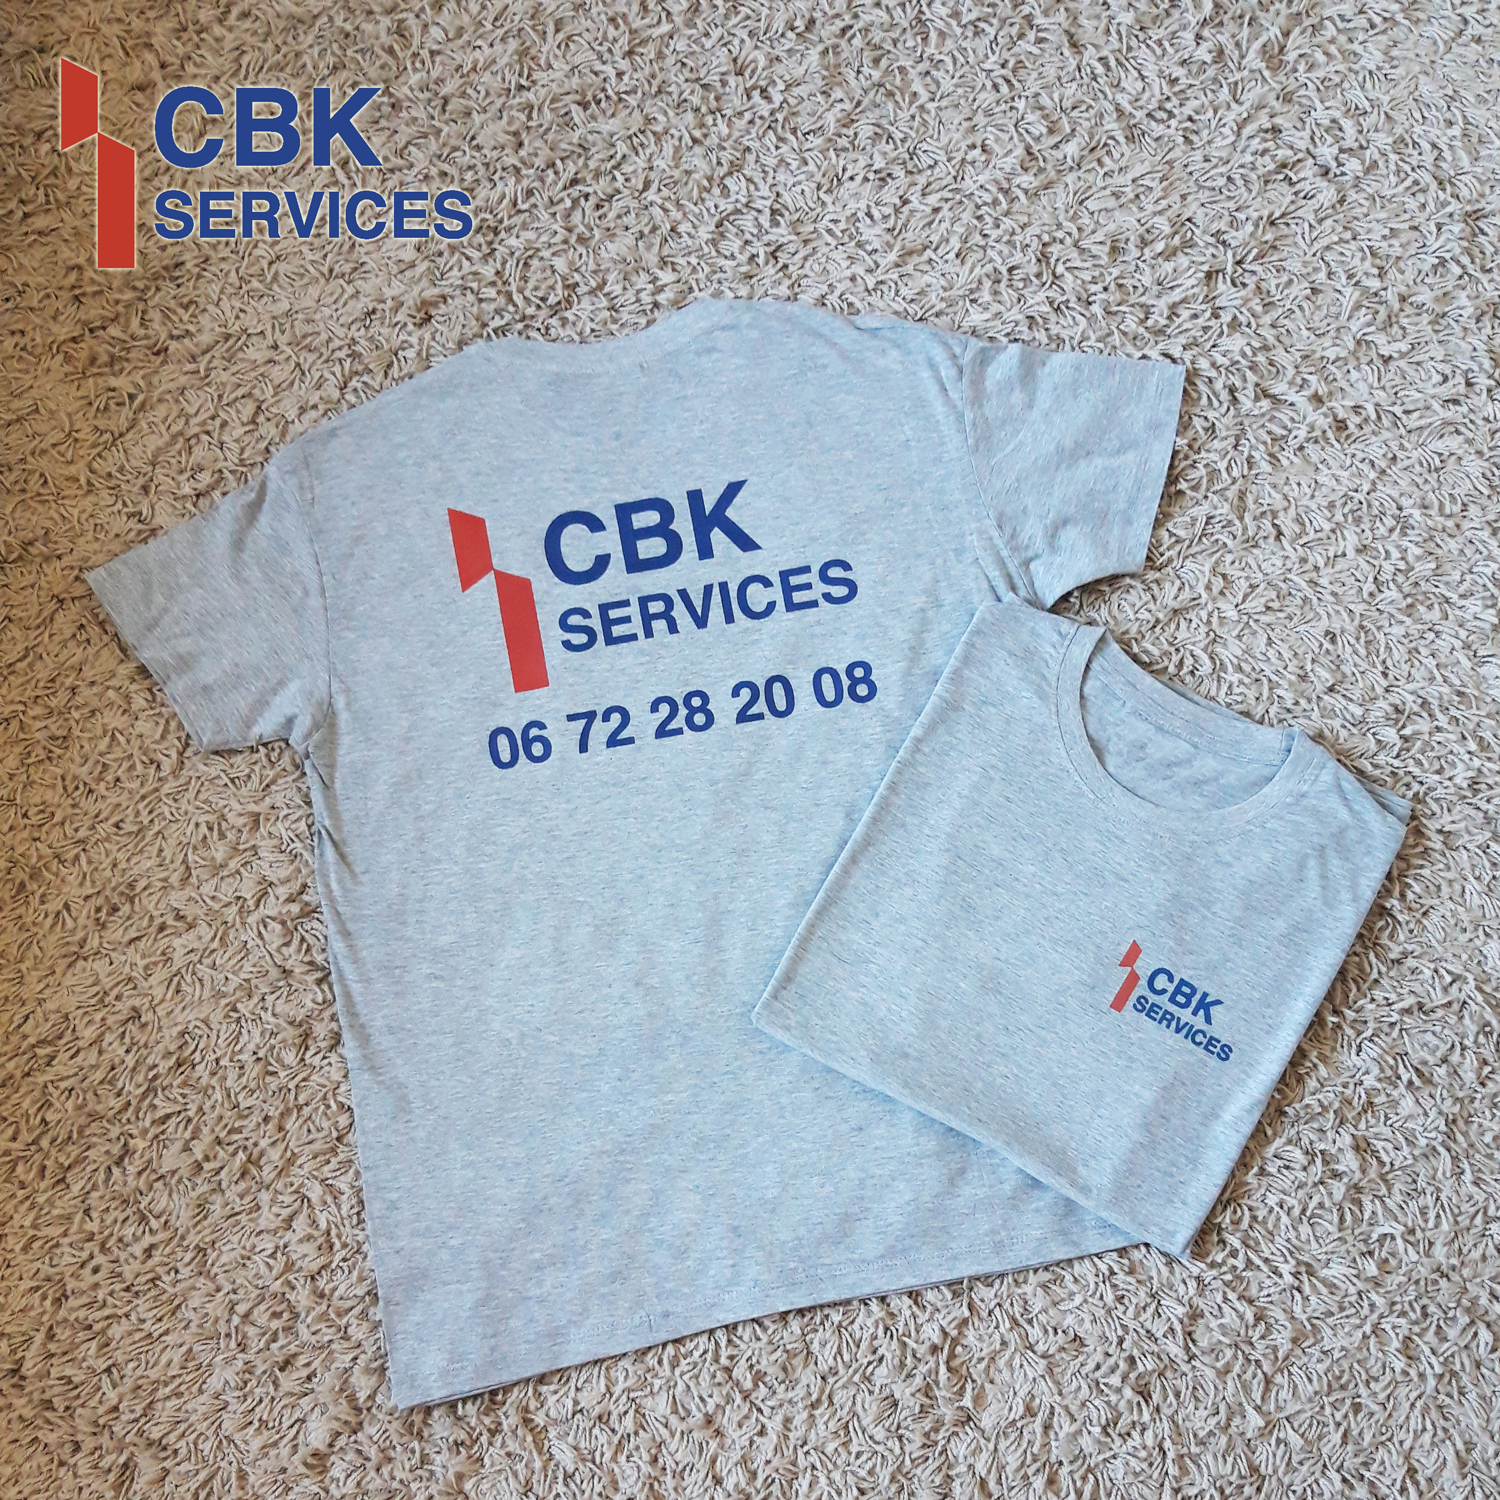 Tshirts pour CBK services